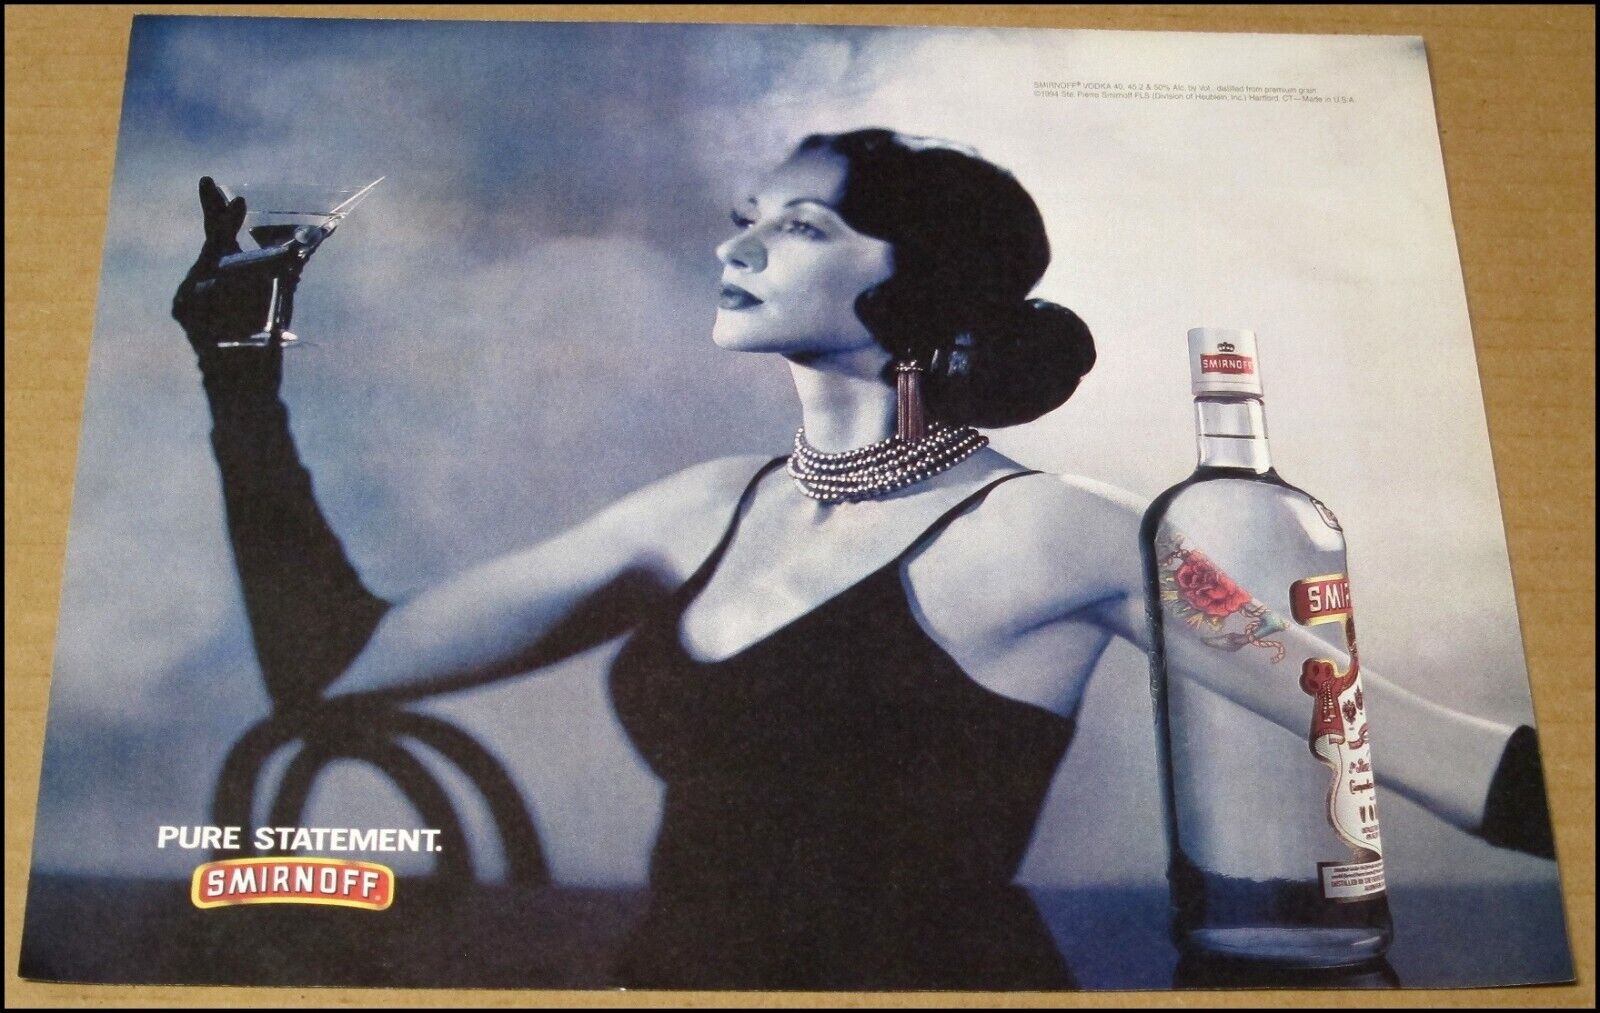 1994 Smirnoff Vodka Print Ad 12" x 10" Advertisement Vintage Pure Statement